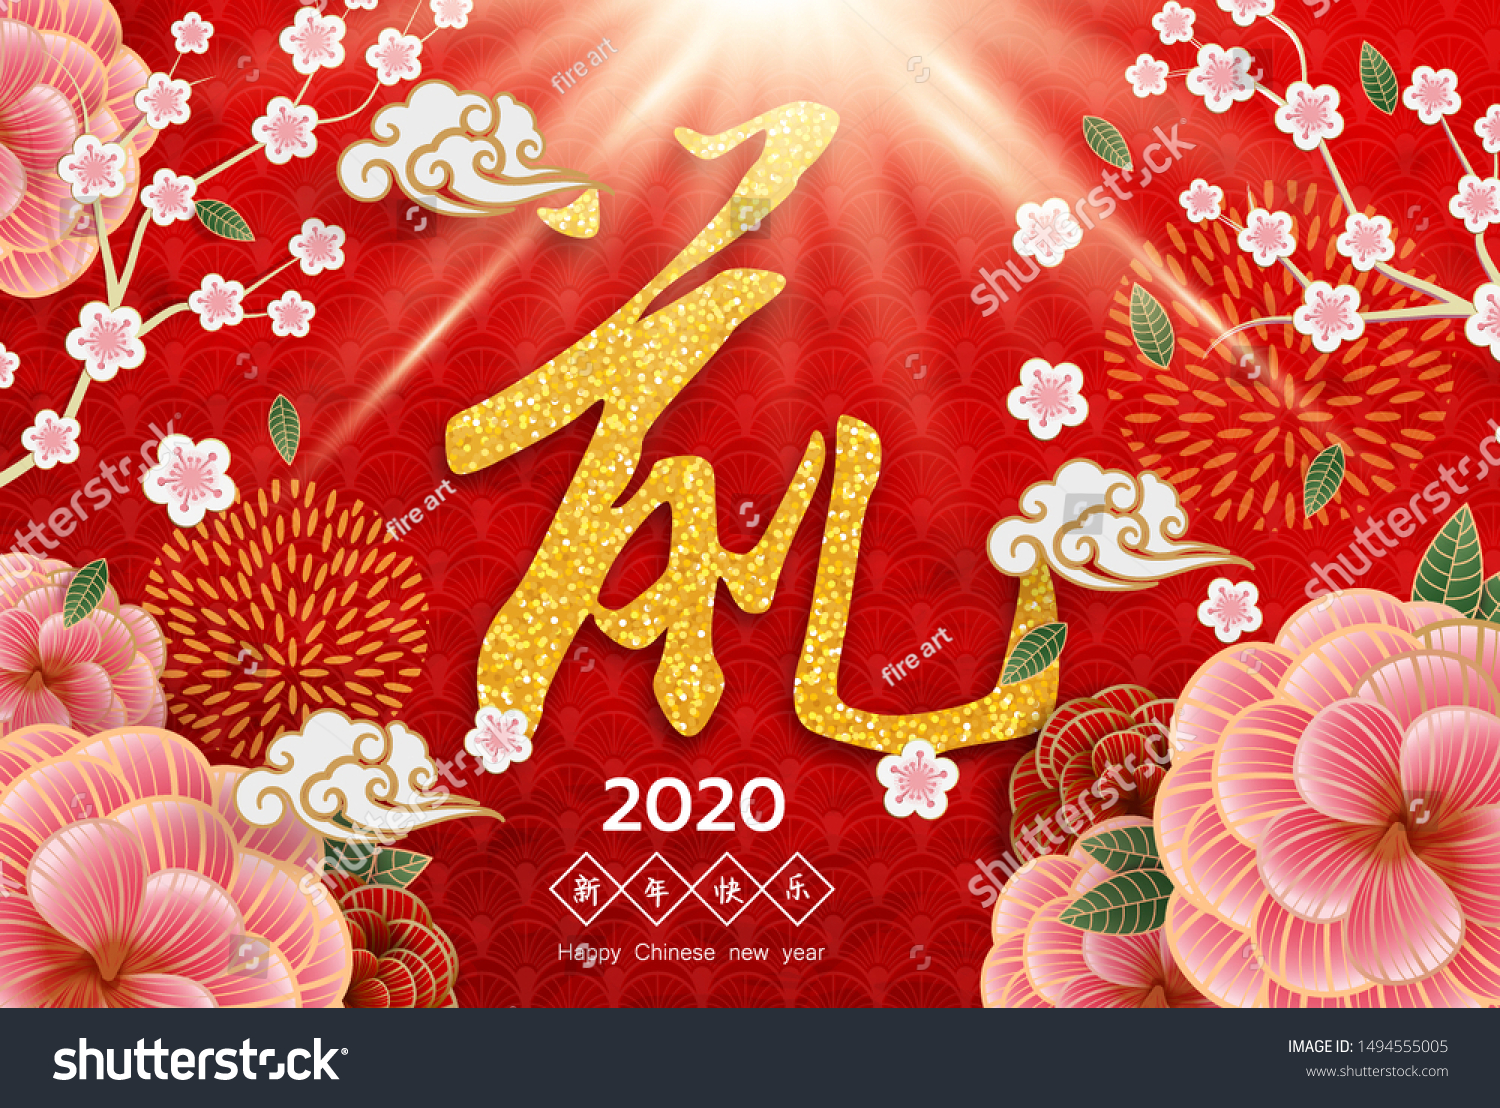 Китайские новогодние открытки 2020